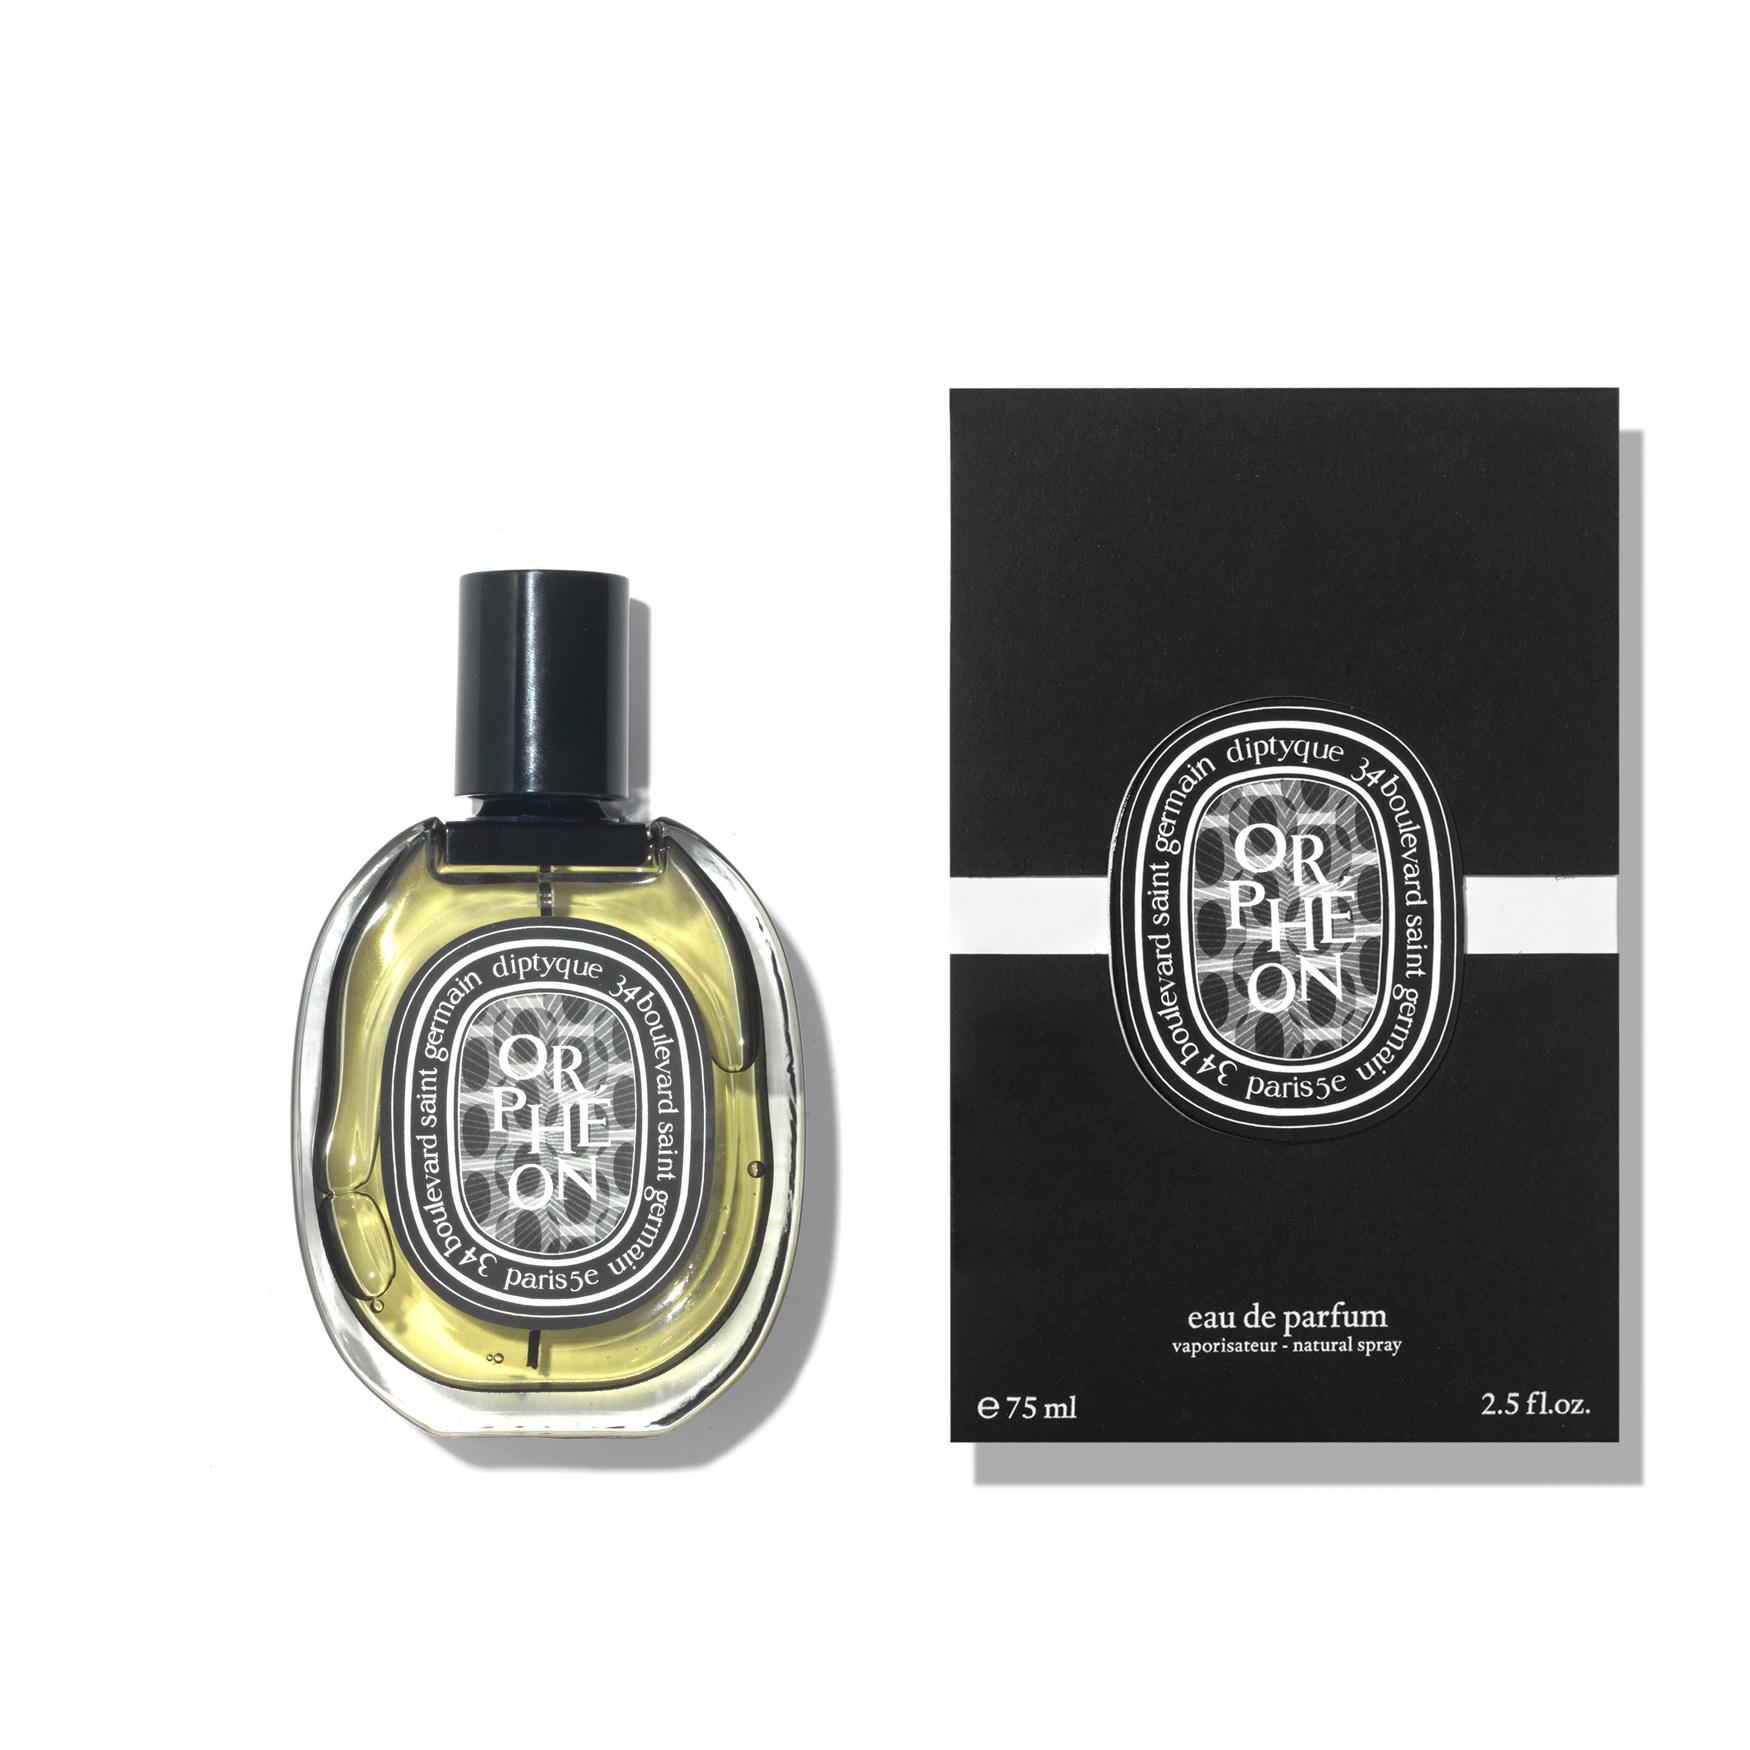 Diptyque Orpheon Eau de Parfum | Space NK